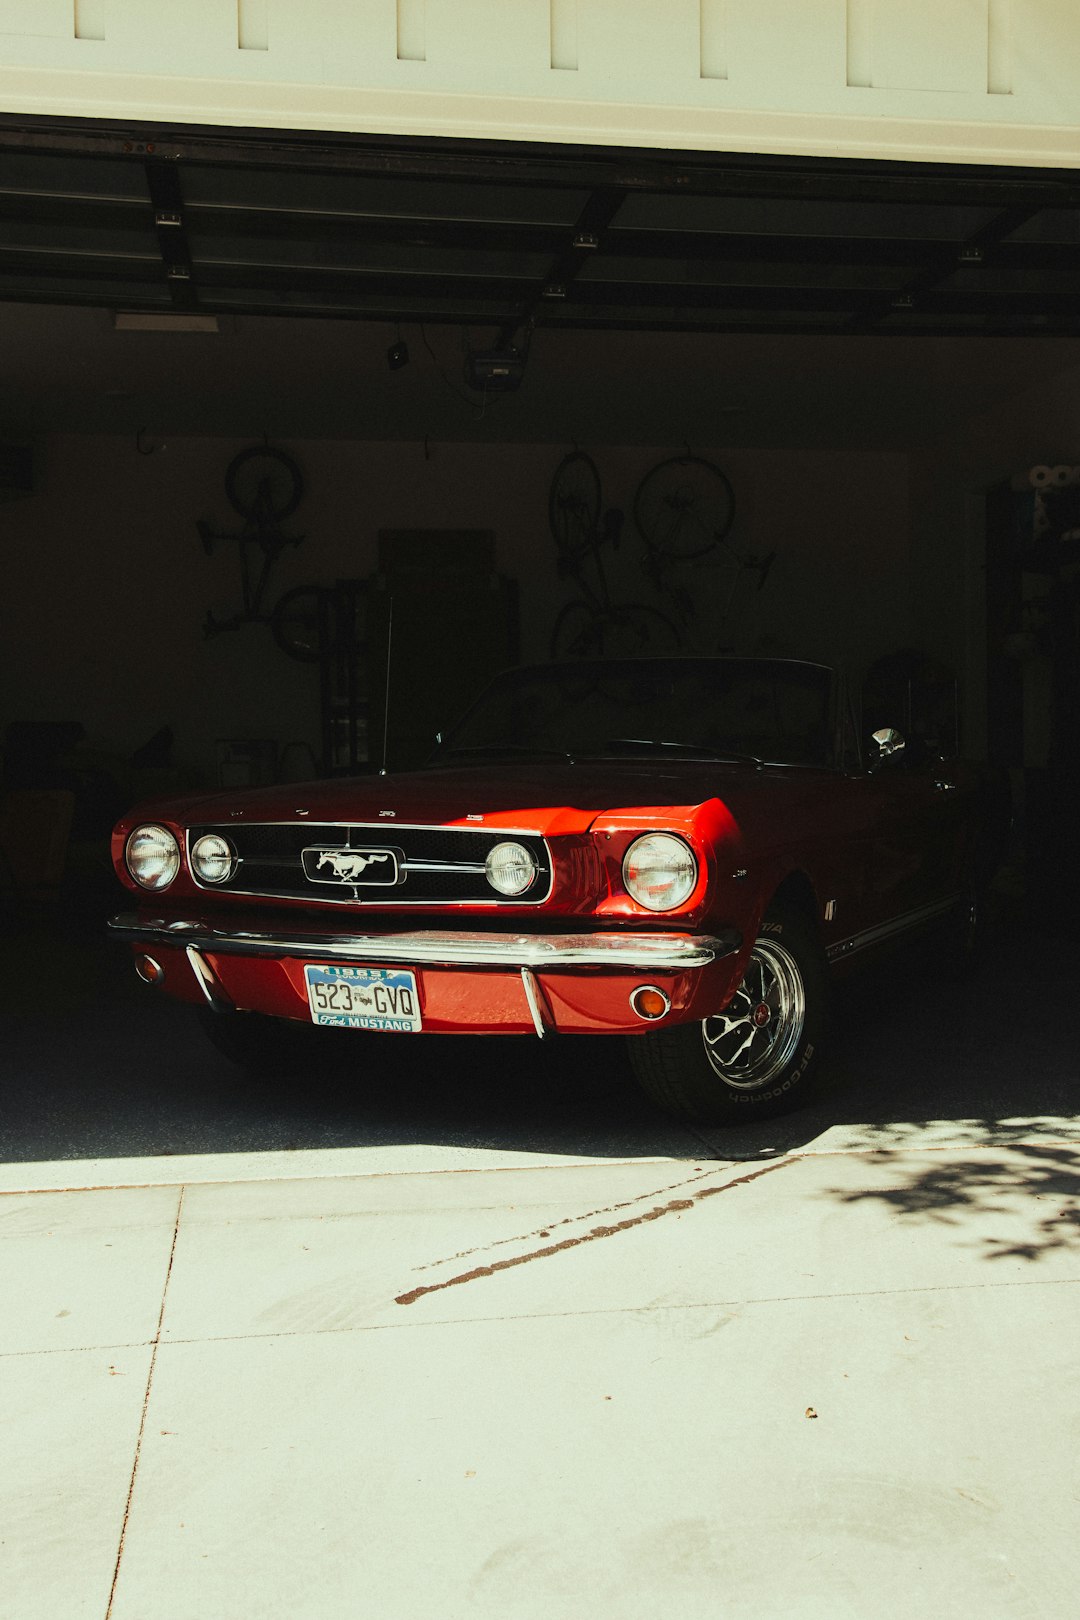 red porsche 911 parked in garage